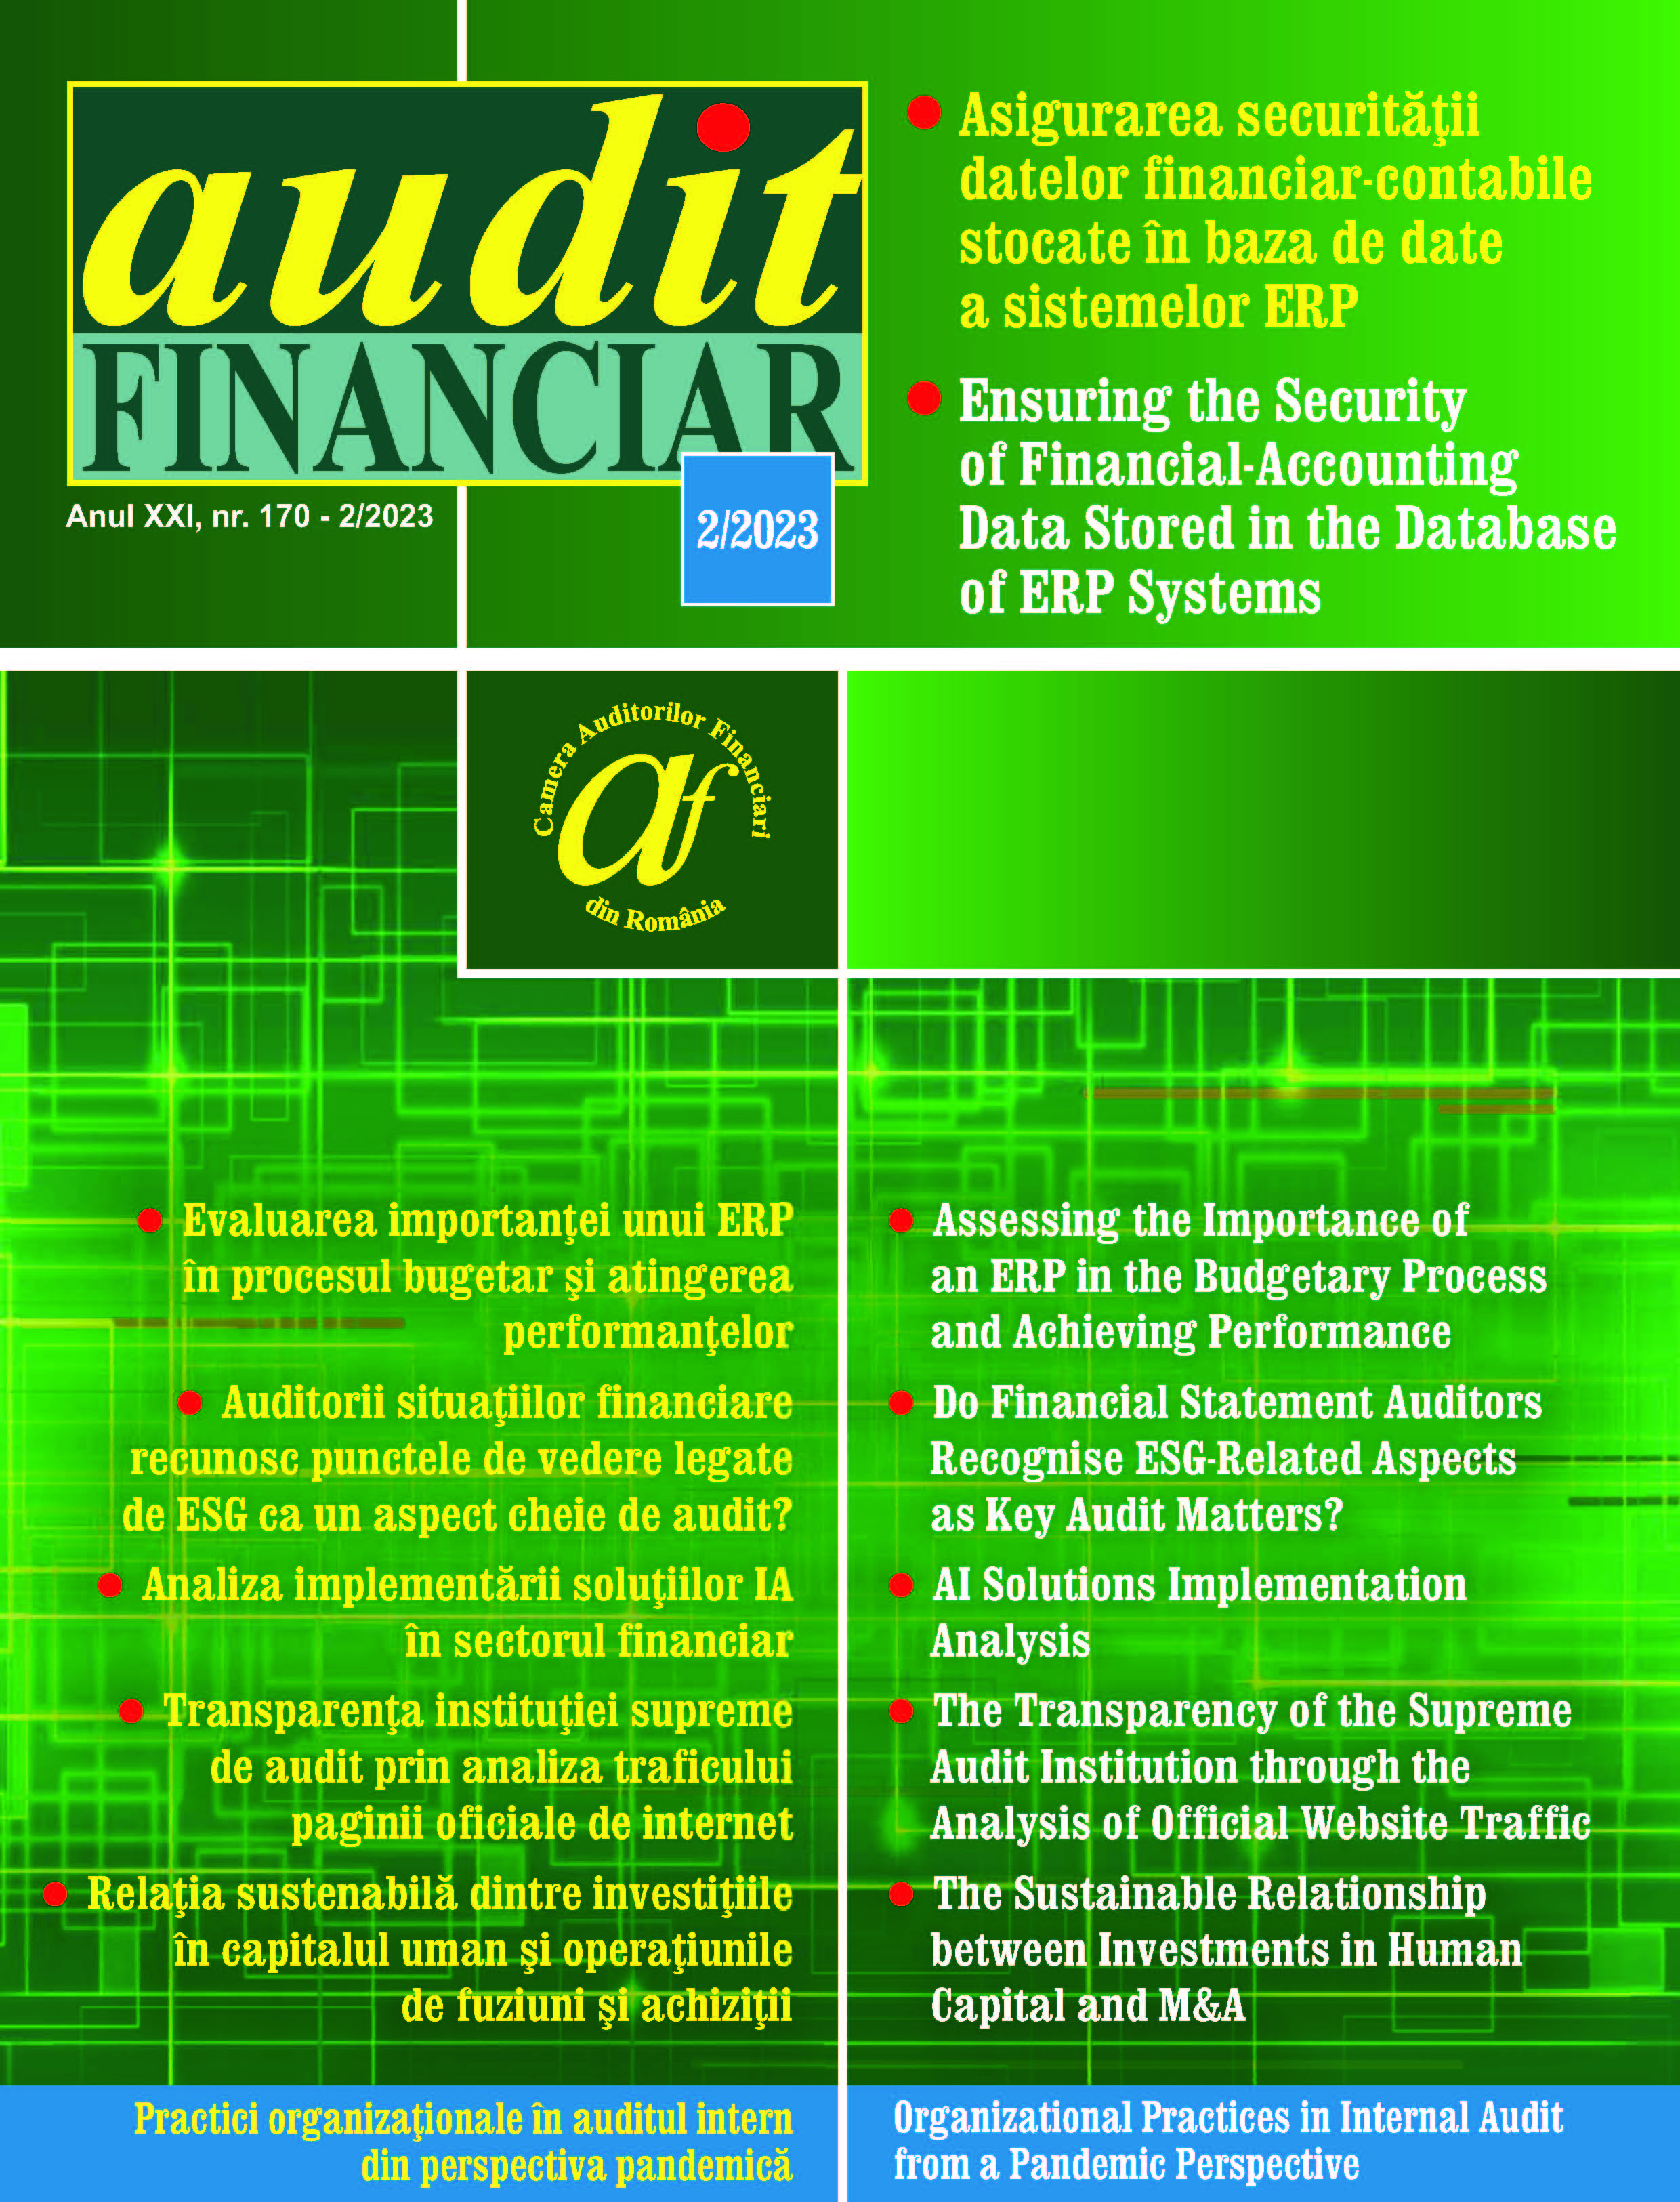 Asigurarea securitatii datelor financiar-contabile stocate in baza de date a sistemelor ERP